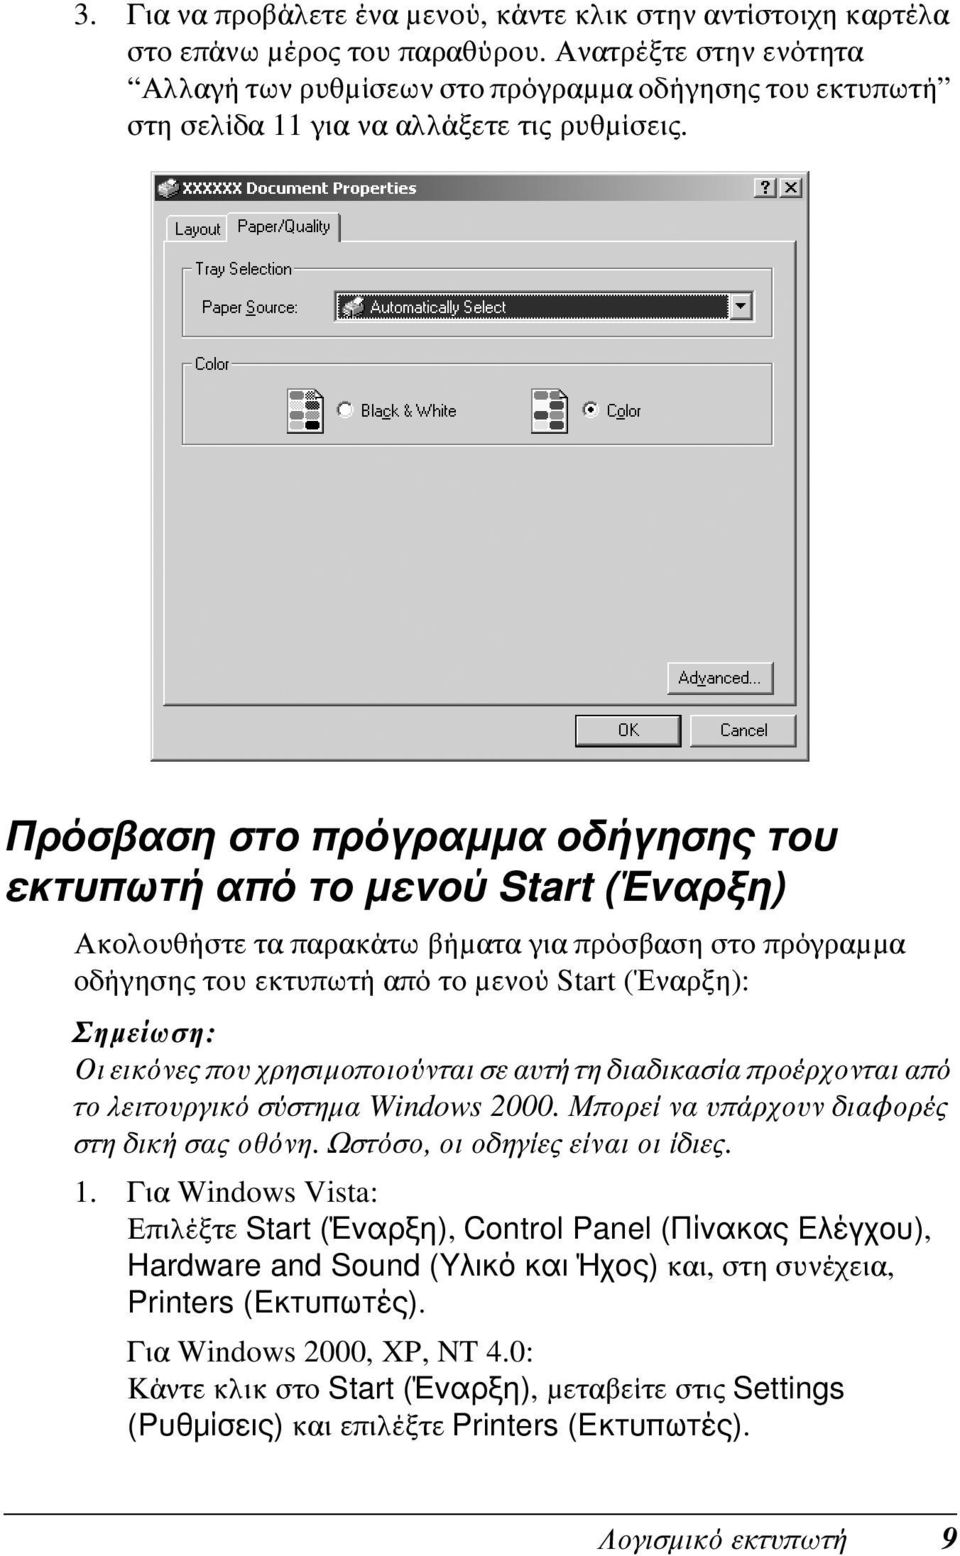 Πρόσβαση στο πρόγραμμα οδήγησης του εκτυπωτή από το μενού Start (Έναρξη) Ακολουθήστε τα παρακάτω βήματα για πρόσβαση στο πρόγραμμα οδήγησης του εκτυπωτή από το μενού Start (Έναρξη): Οι εικόνες που